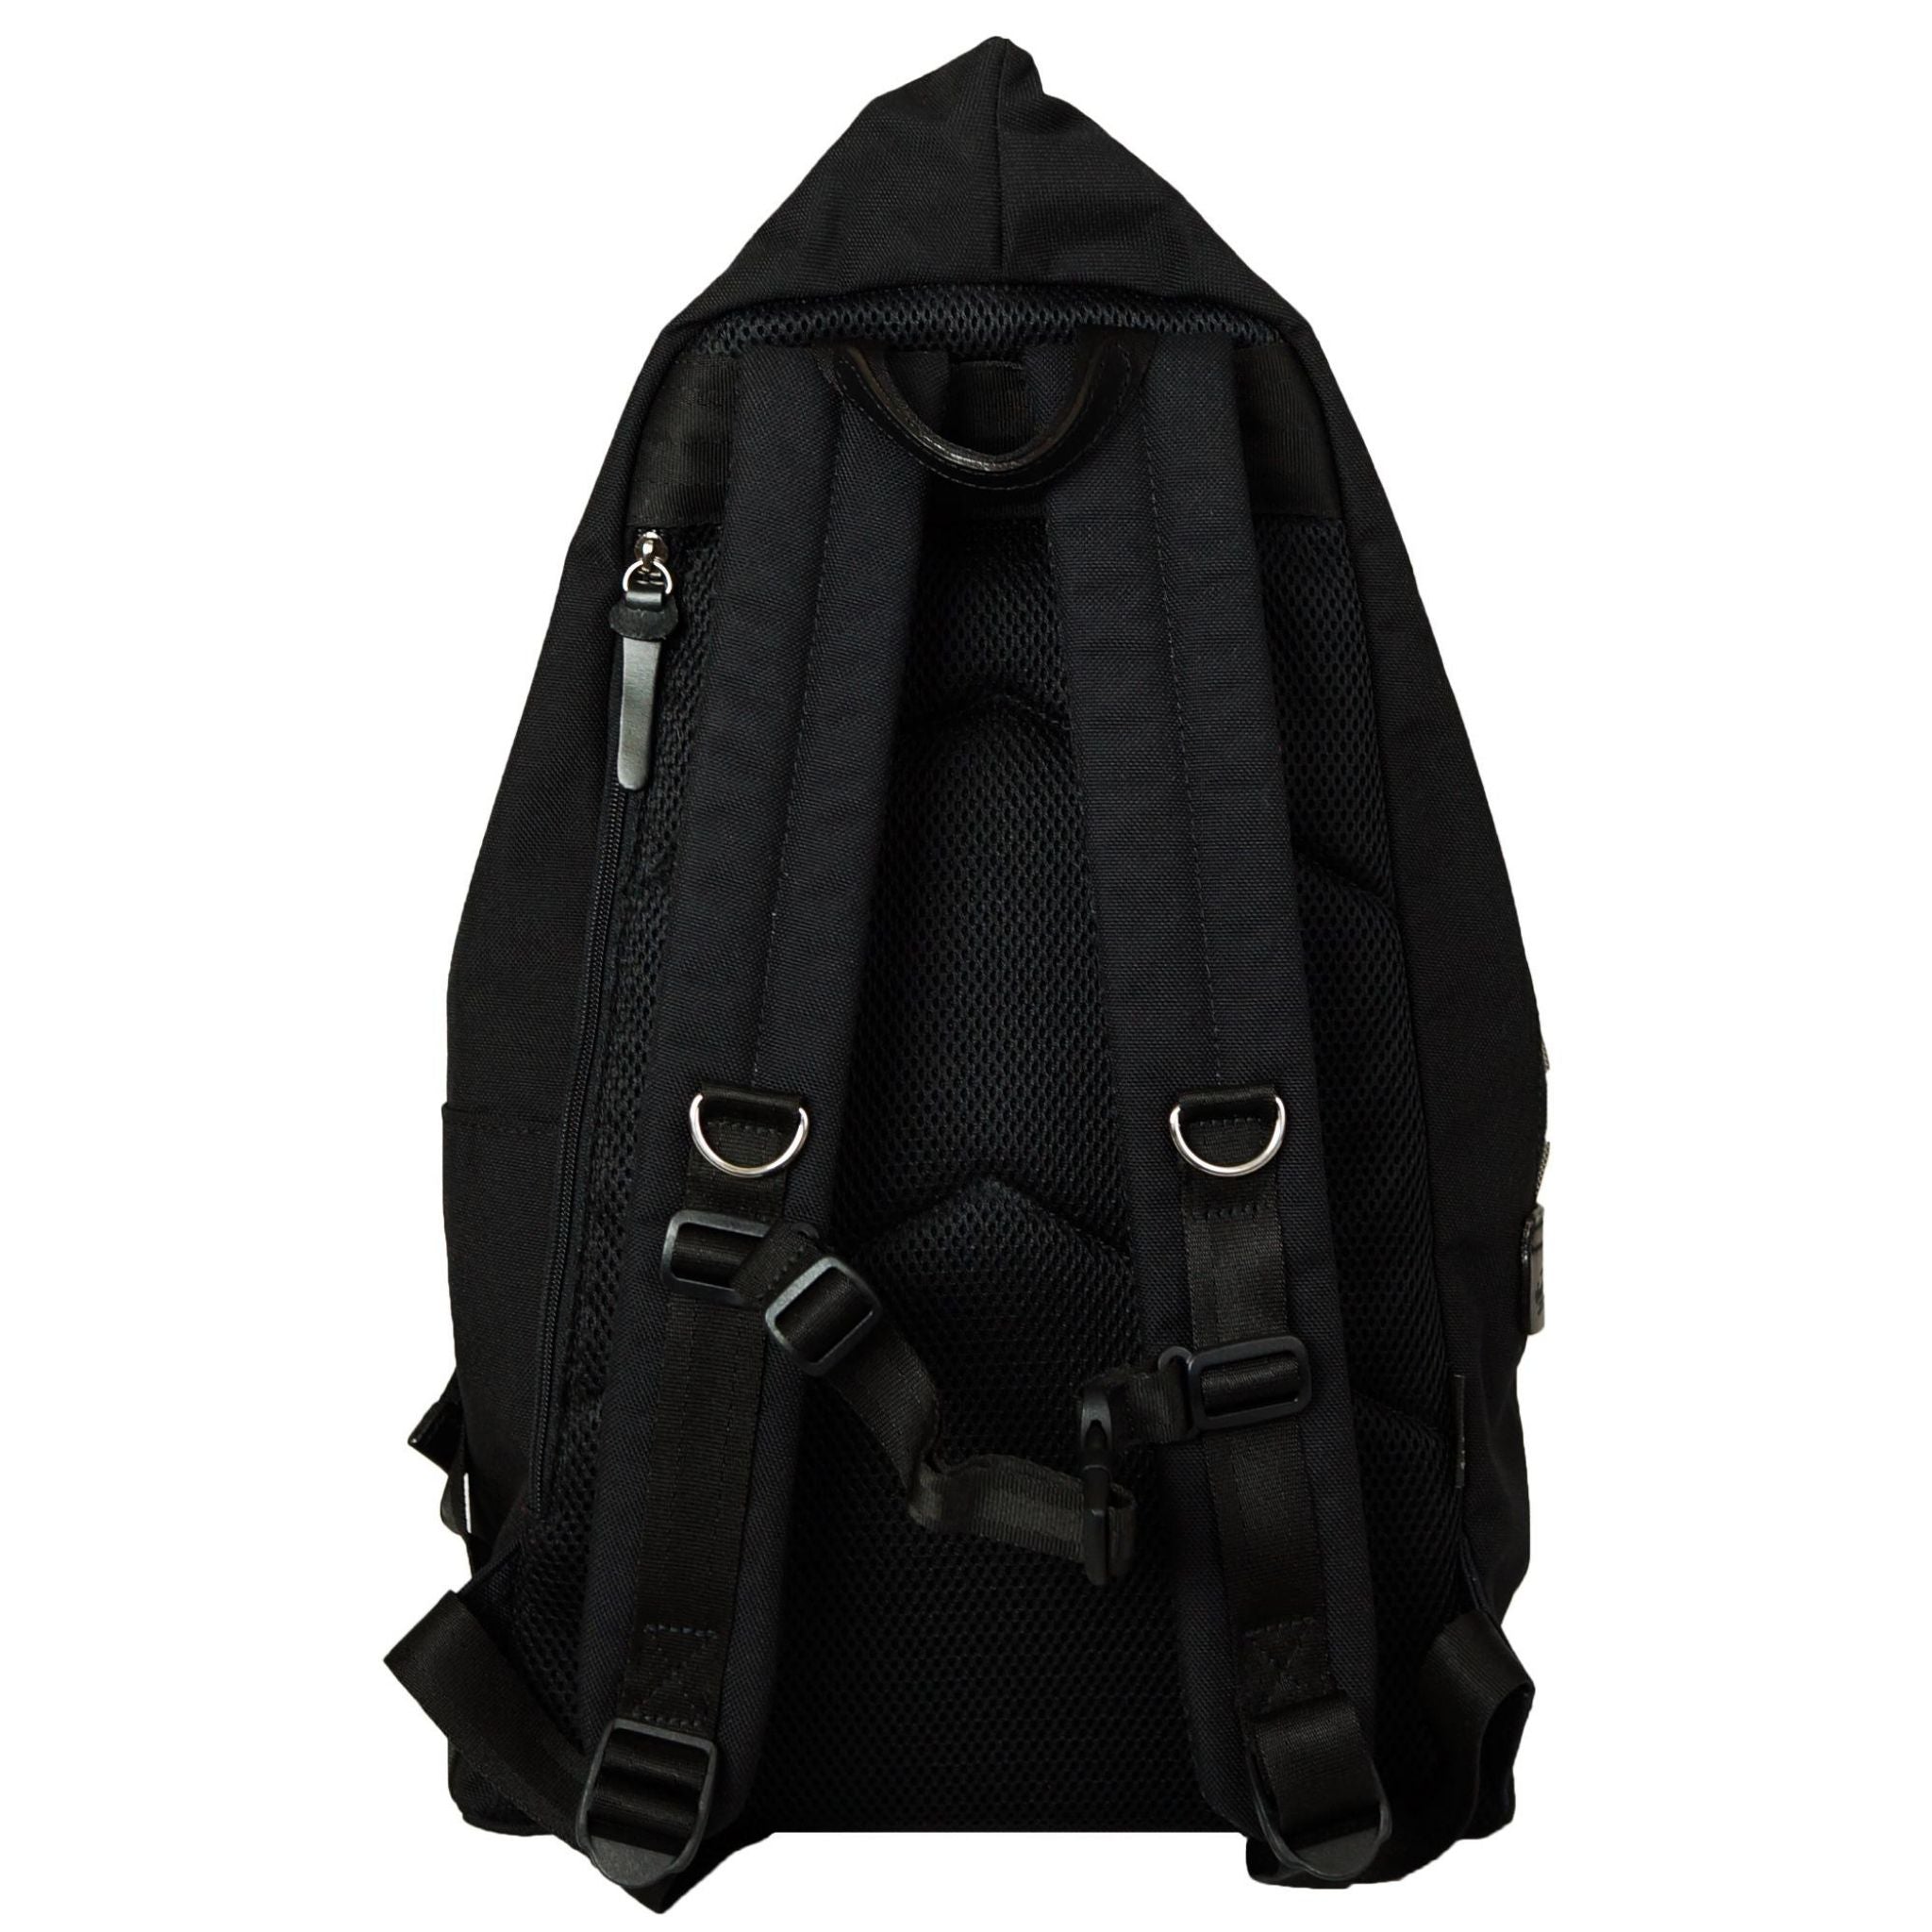 TOURER Backpack